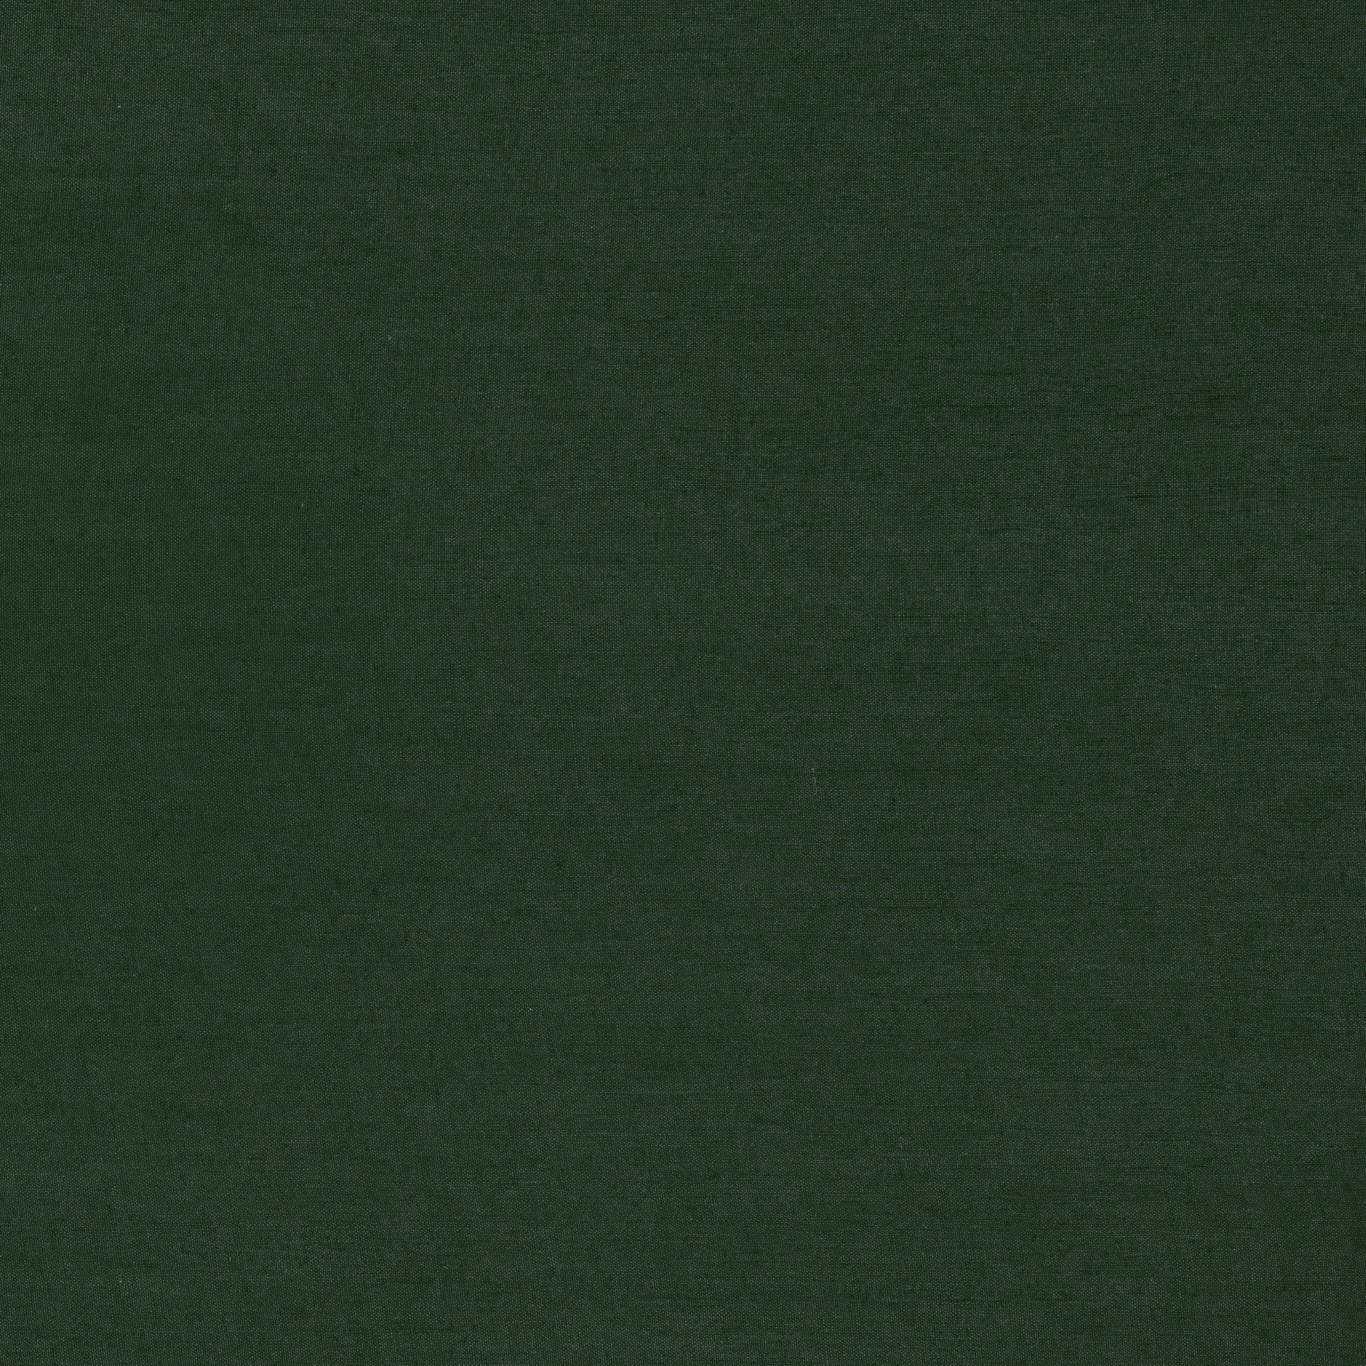 Zoffany Linens Huntsman Green Fabric by Zoffany